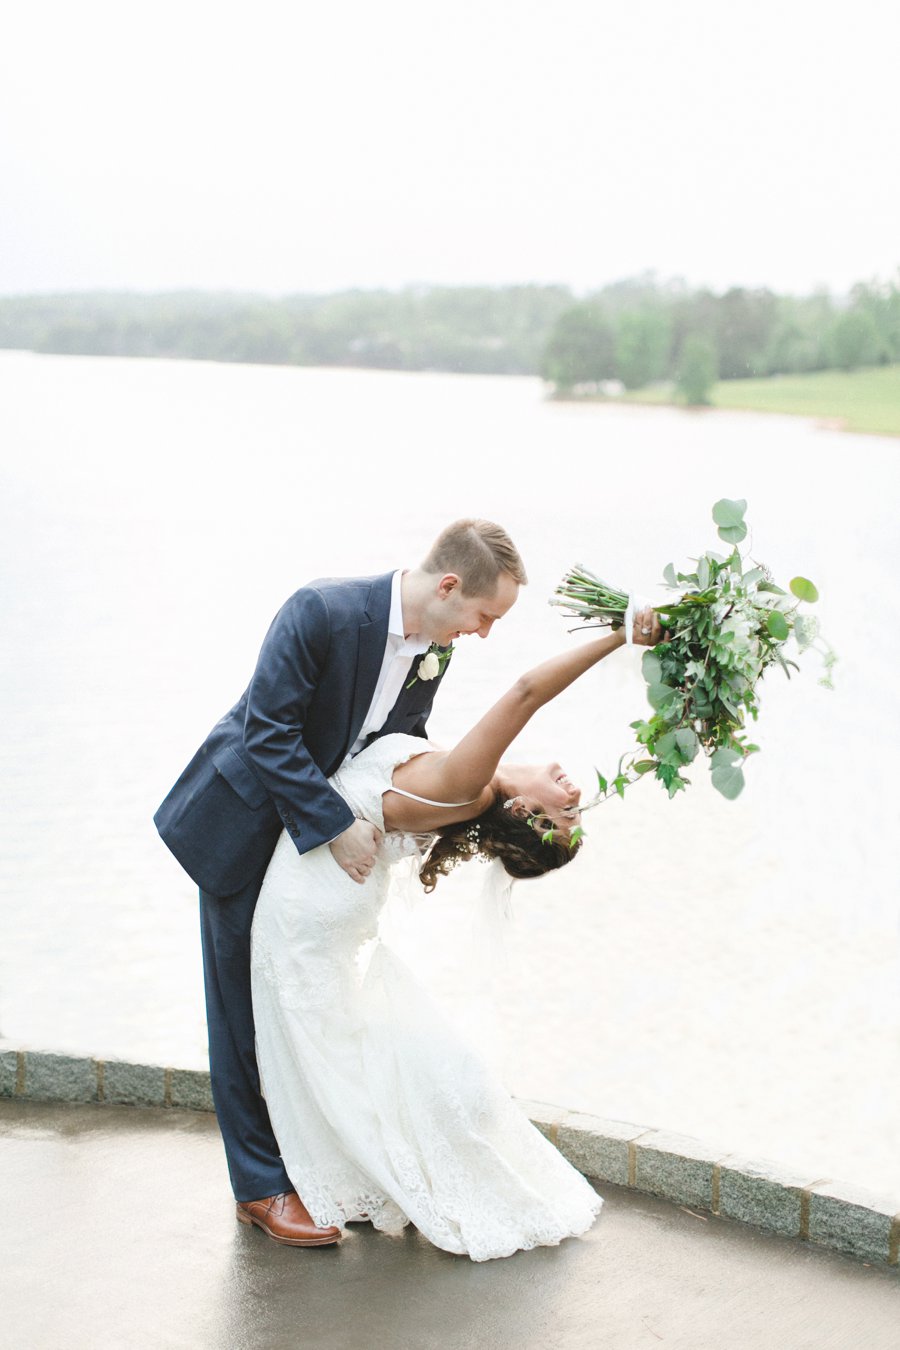 An Elegant Green & White South Carolina Wedding via TheELD.com